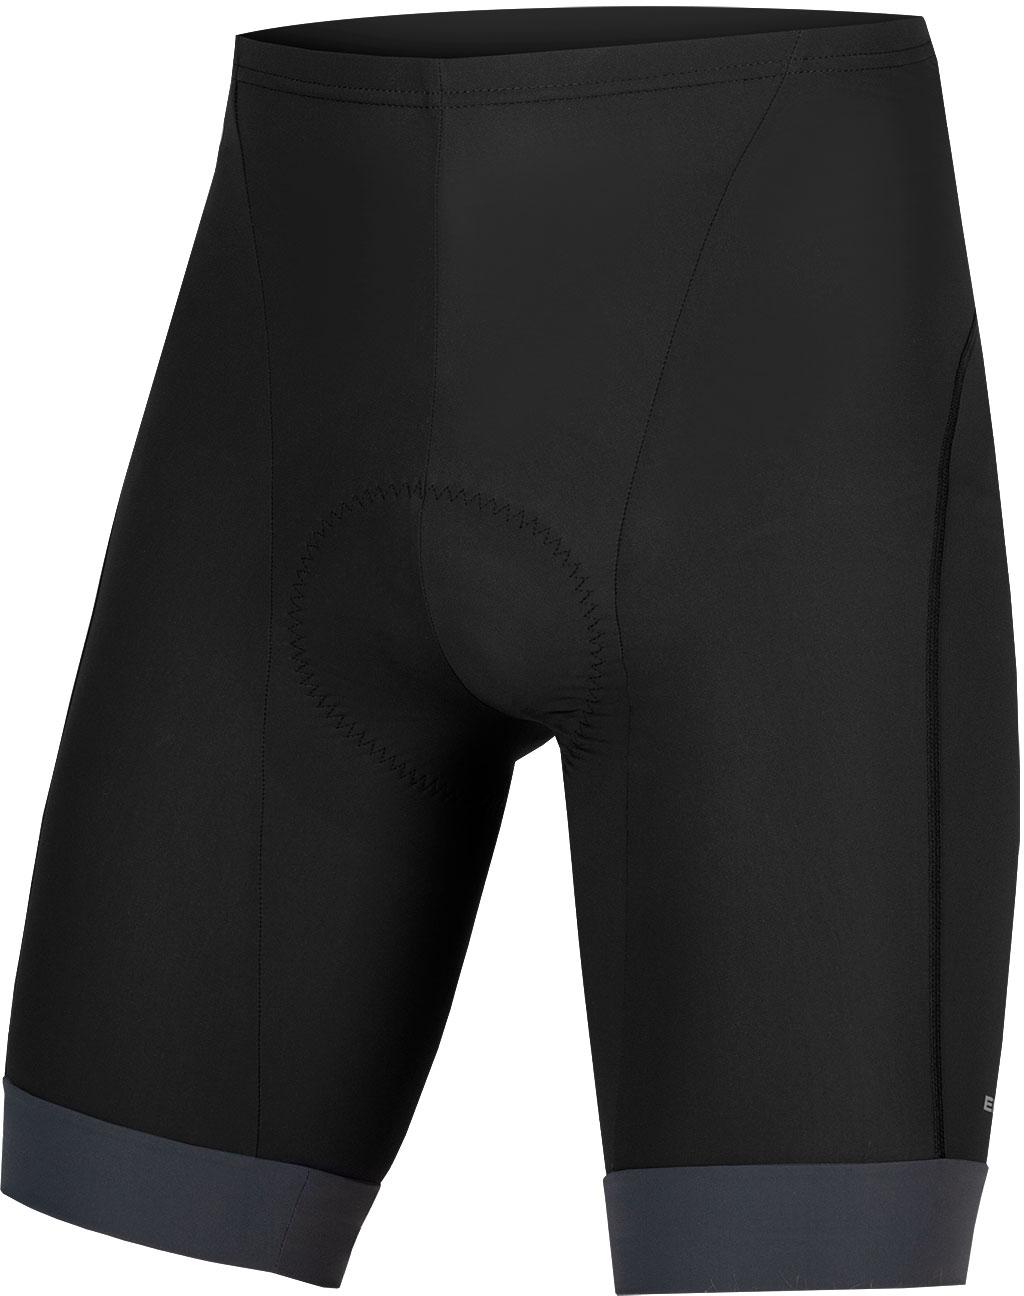 Endura Xtract Lite Cycle Shorts (500 Series Pad) - Grey